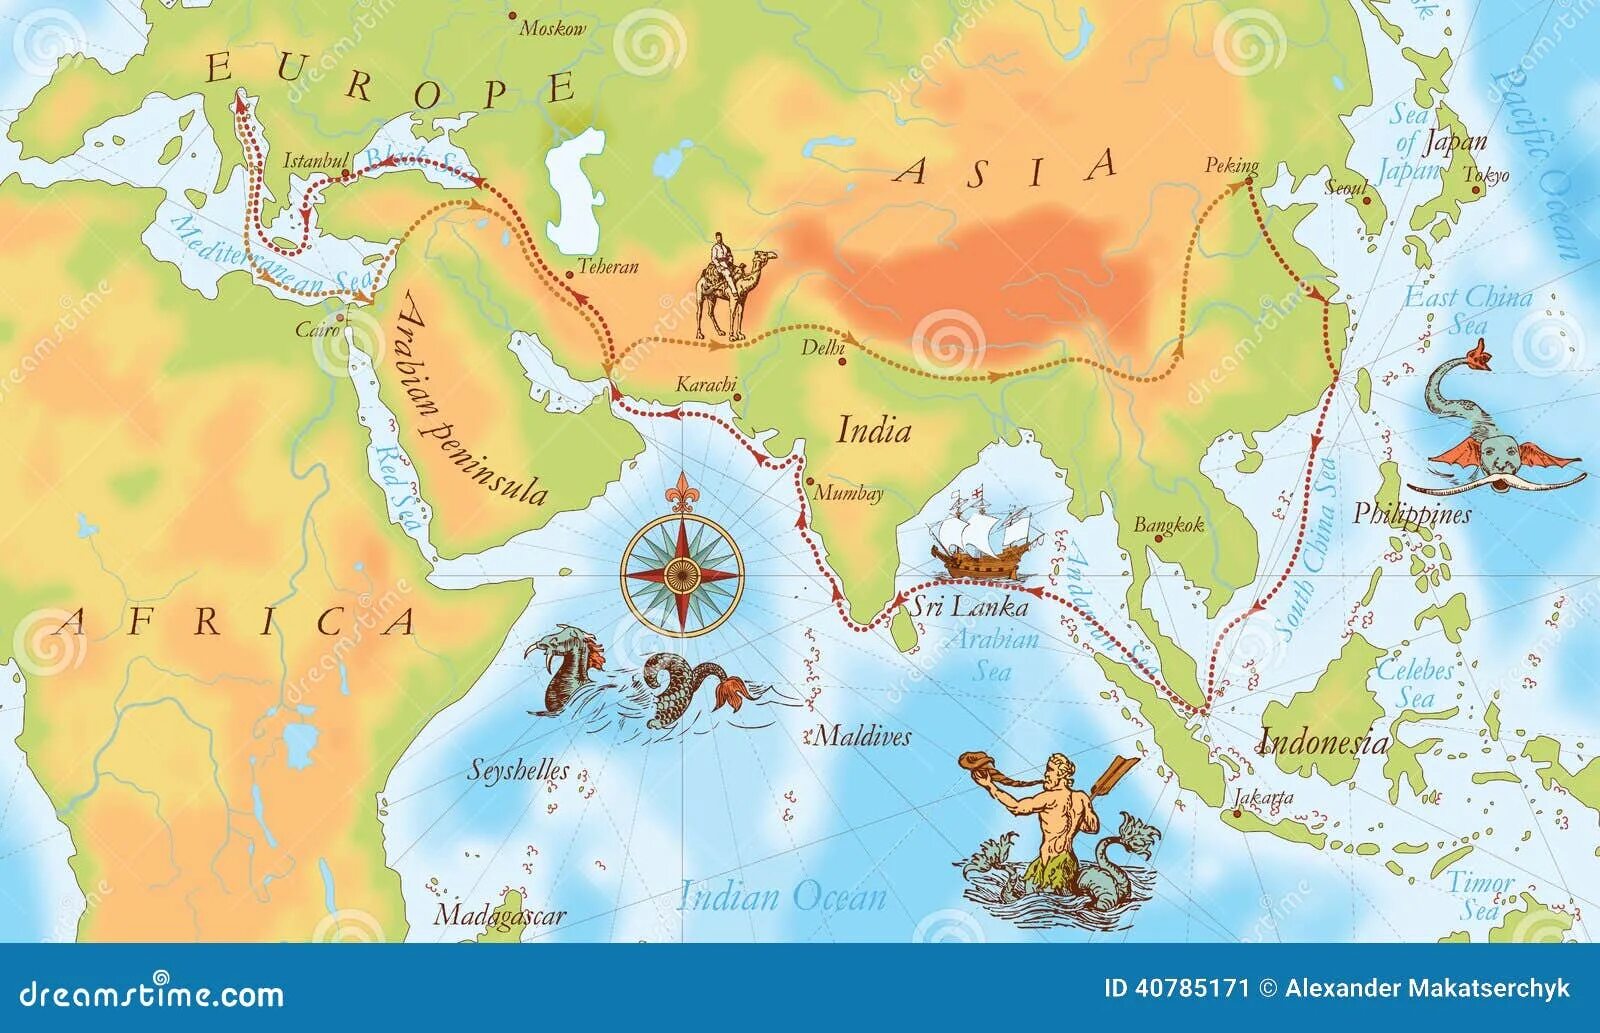 Не указан путь для пола. Путь Марко поло. Карты древние Марко поло. Марко поло путь в Китай на карте. Карта путешествия Марко поло в Индия.